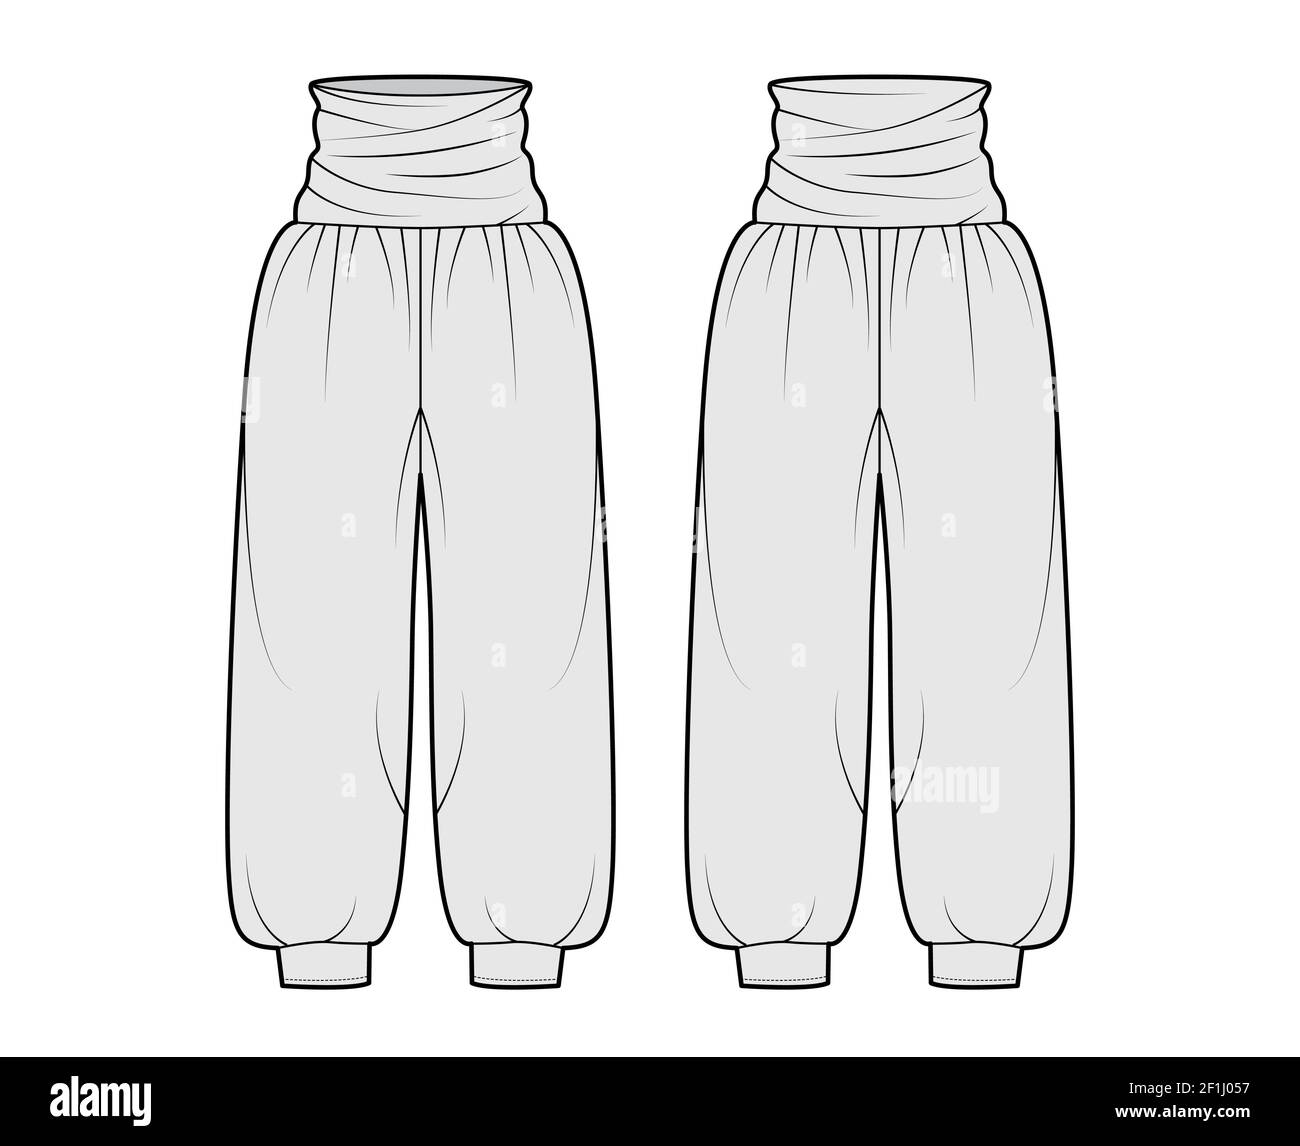 Pantalon zouave illustration technique de la mode avec taille normale  drapée, taille haute, plis, jambes larges, pleine longueur, surdimensionné.  Modèle de pantalon à fond plat à l'avant, à l'arrière, de couleur grise.